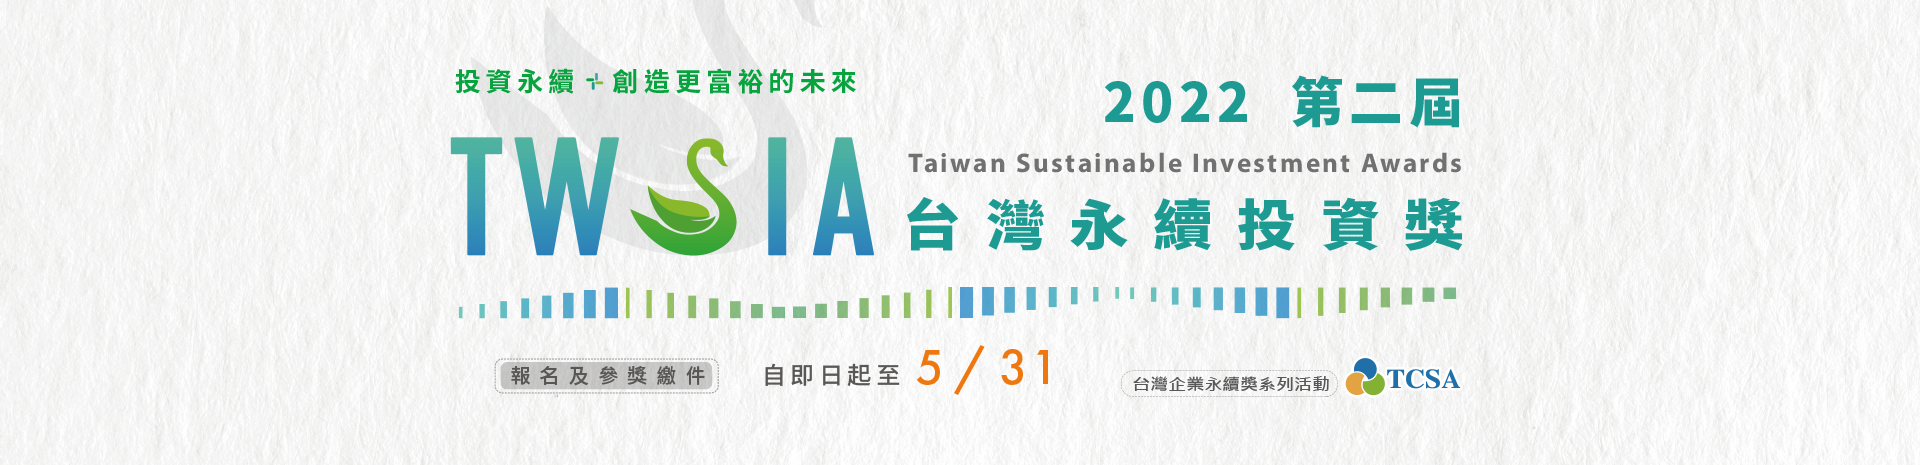 2022第二屆台灣永續投資獎開放報名